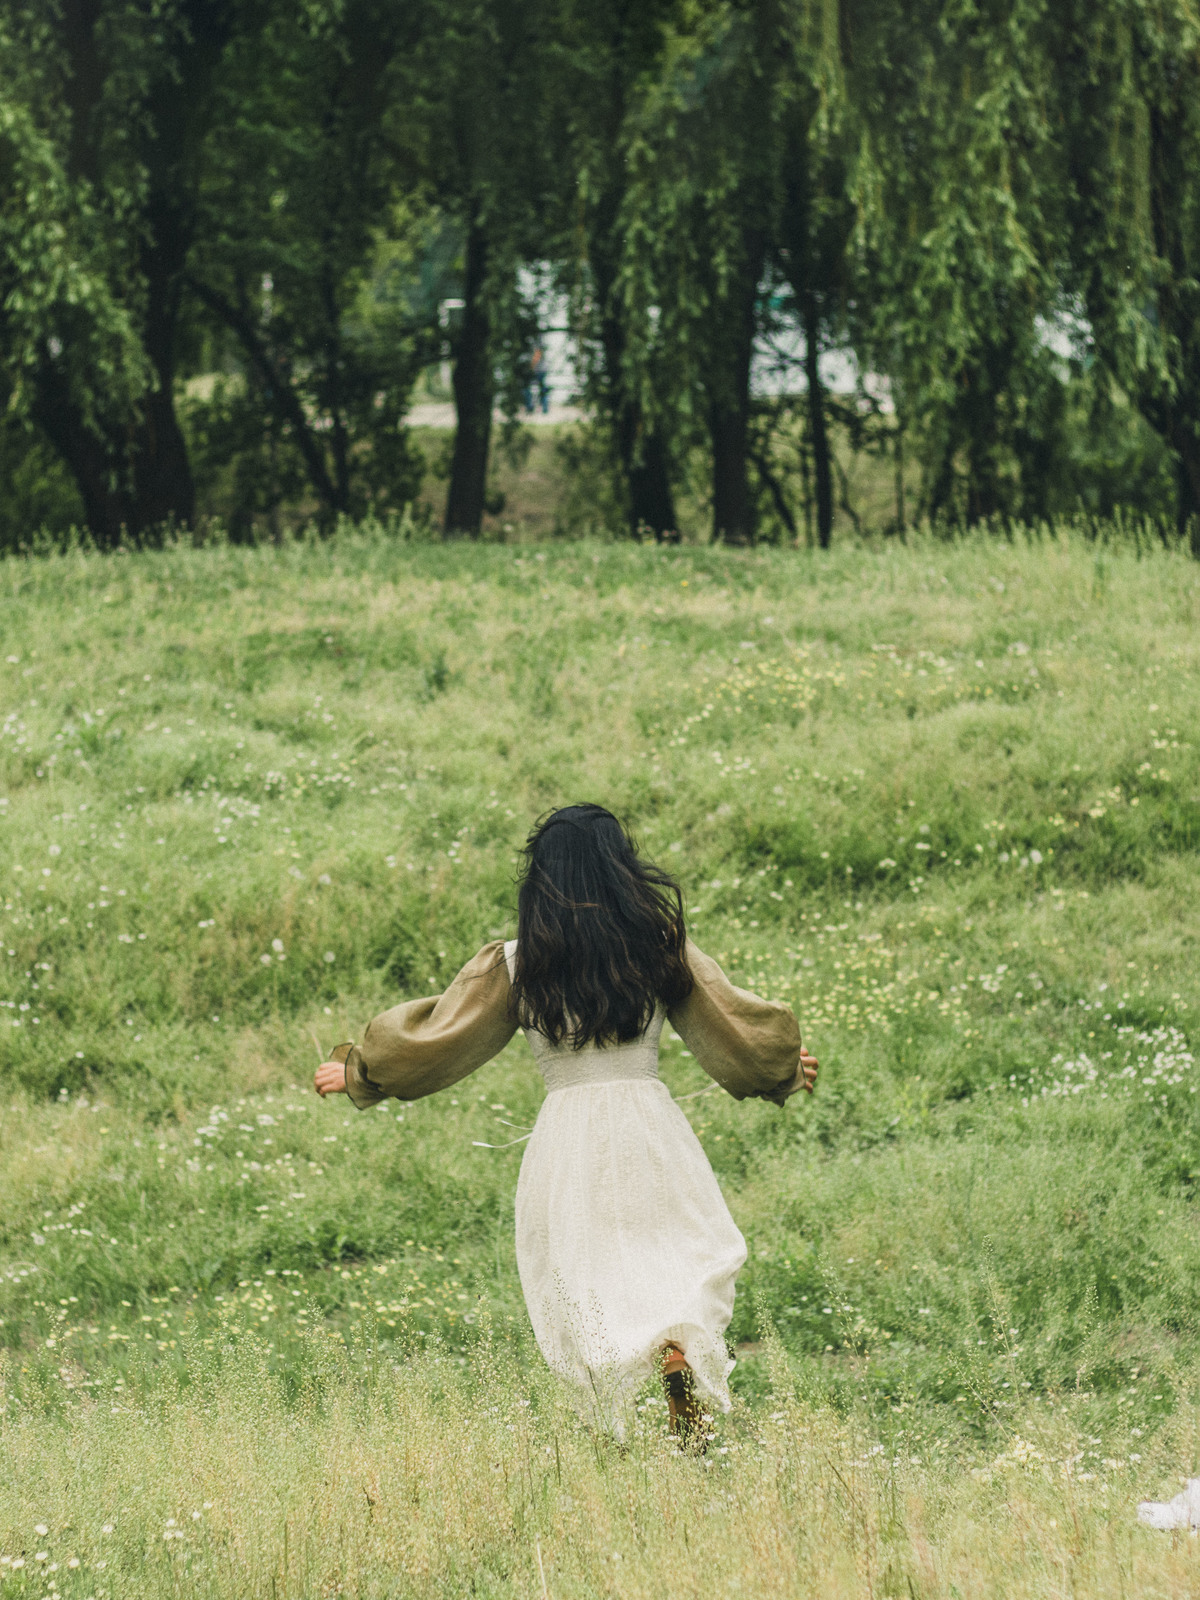 一位穿着连衣裙的女人在草地上奔跑 手里拿着飞盘 穿过一片开满花的草地 穿过一片绿色的草地。